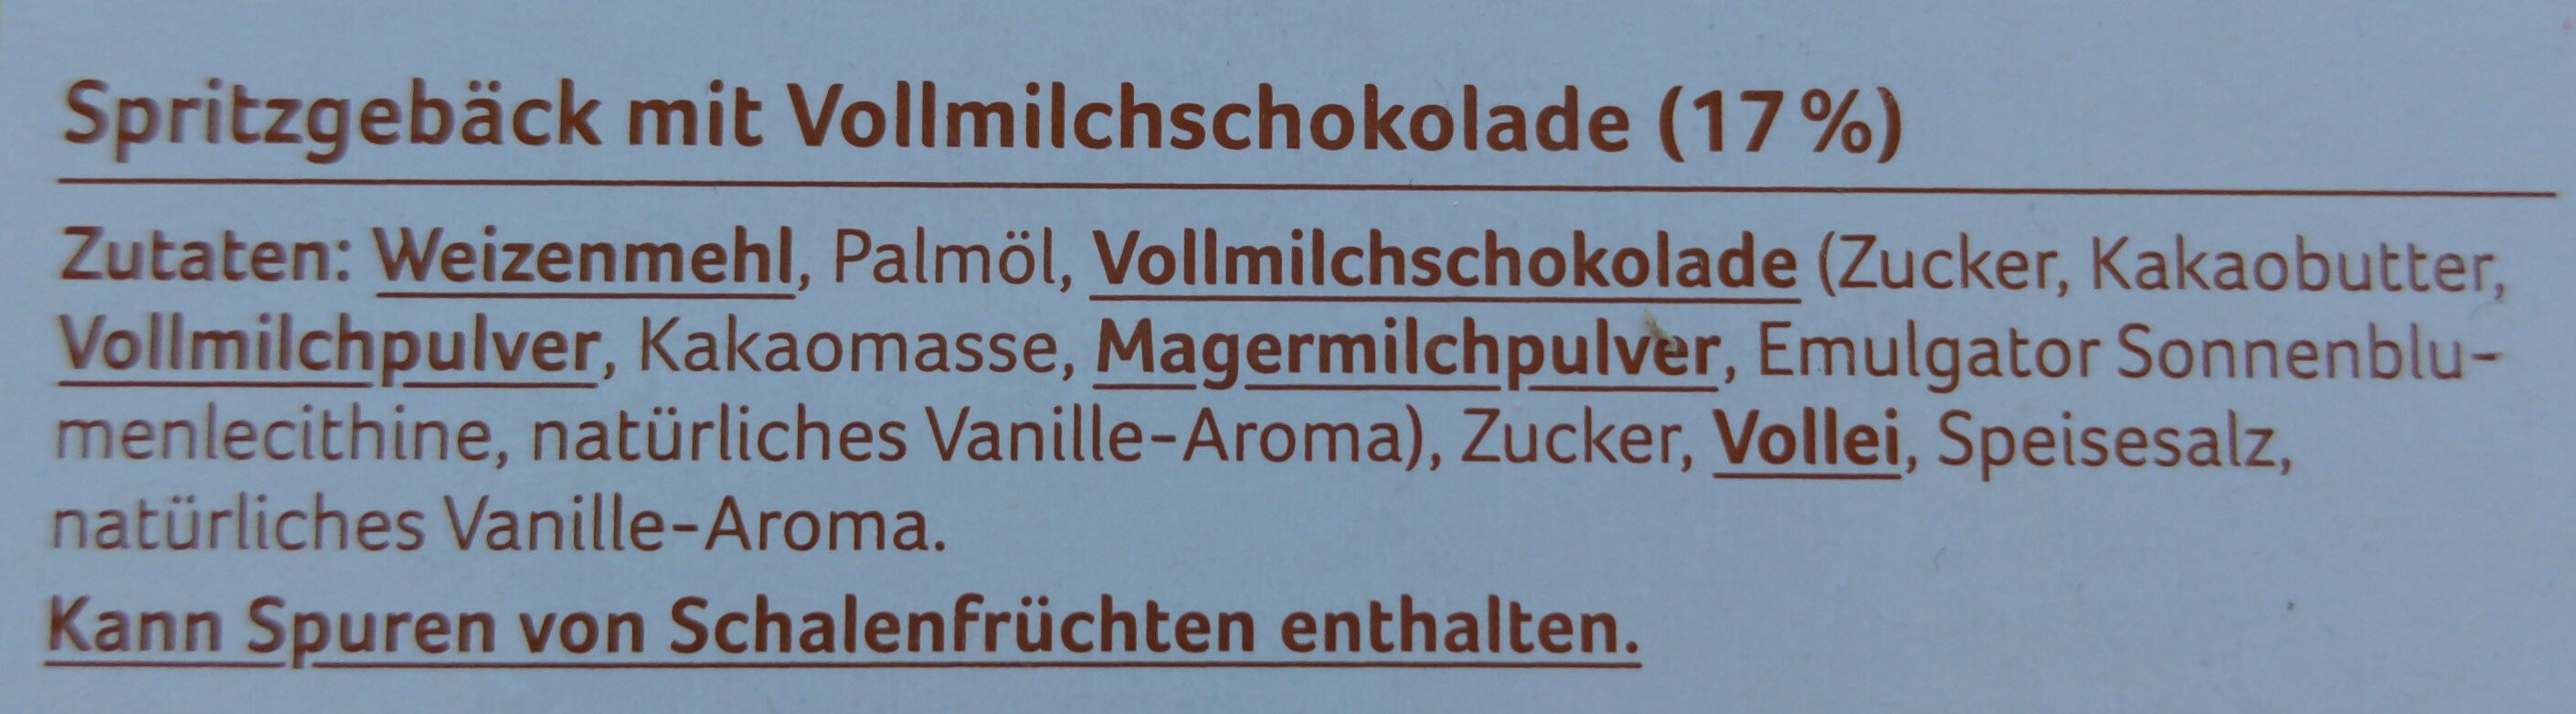 Schoko Spritzgebäck, 17 % Vollmilchschokolade - Zutaten